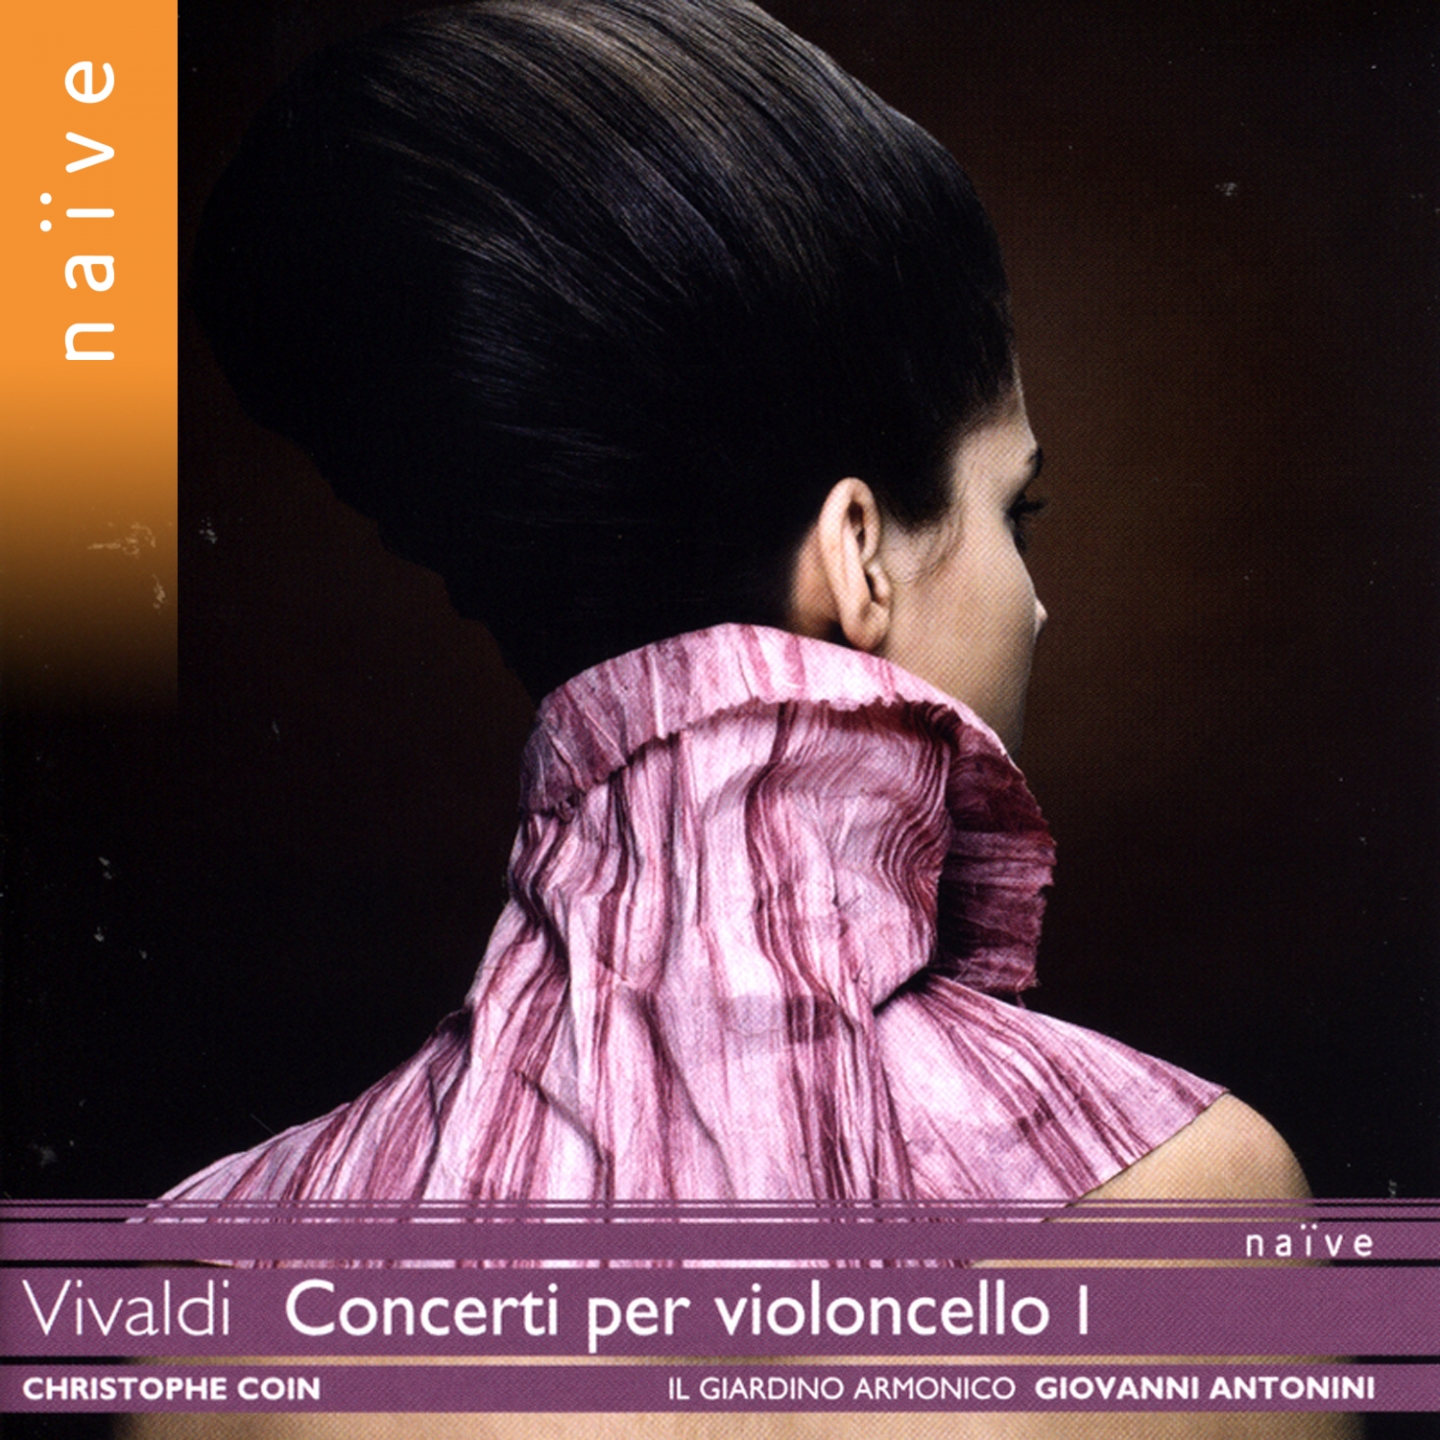 Cello Concerto in E Minor, RV 409: I. Adagio - Allegro